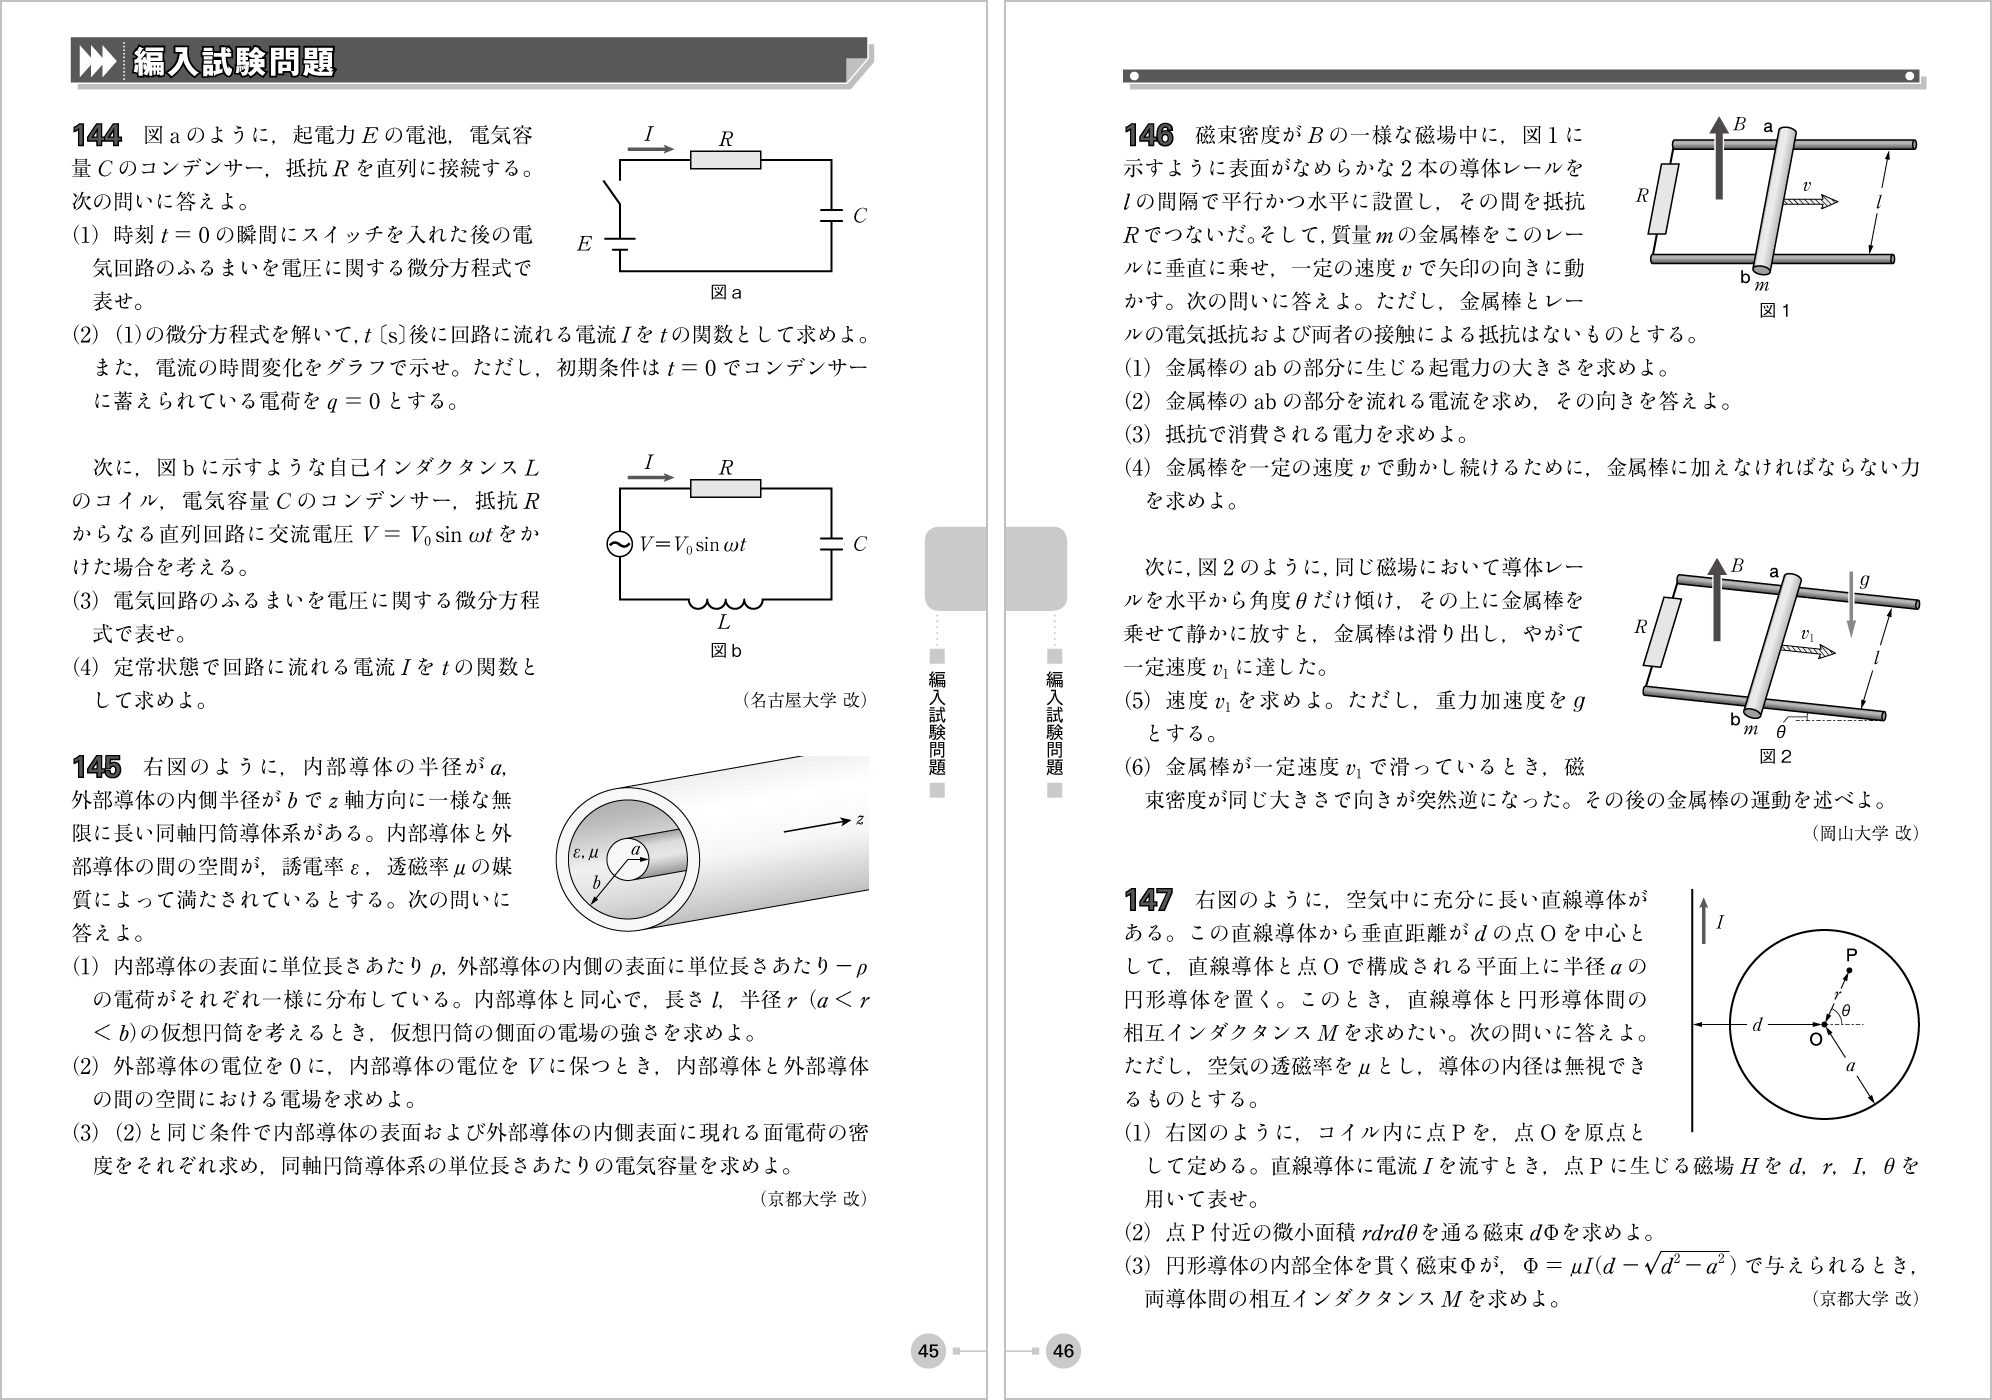 電磁気・原子問題集 p.45-p.46